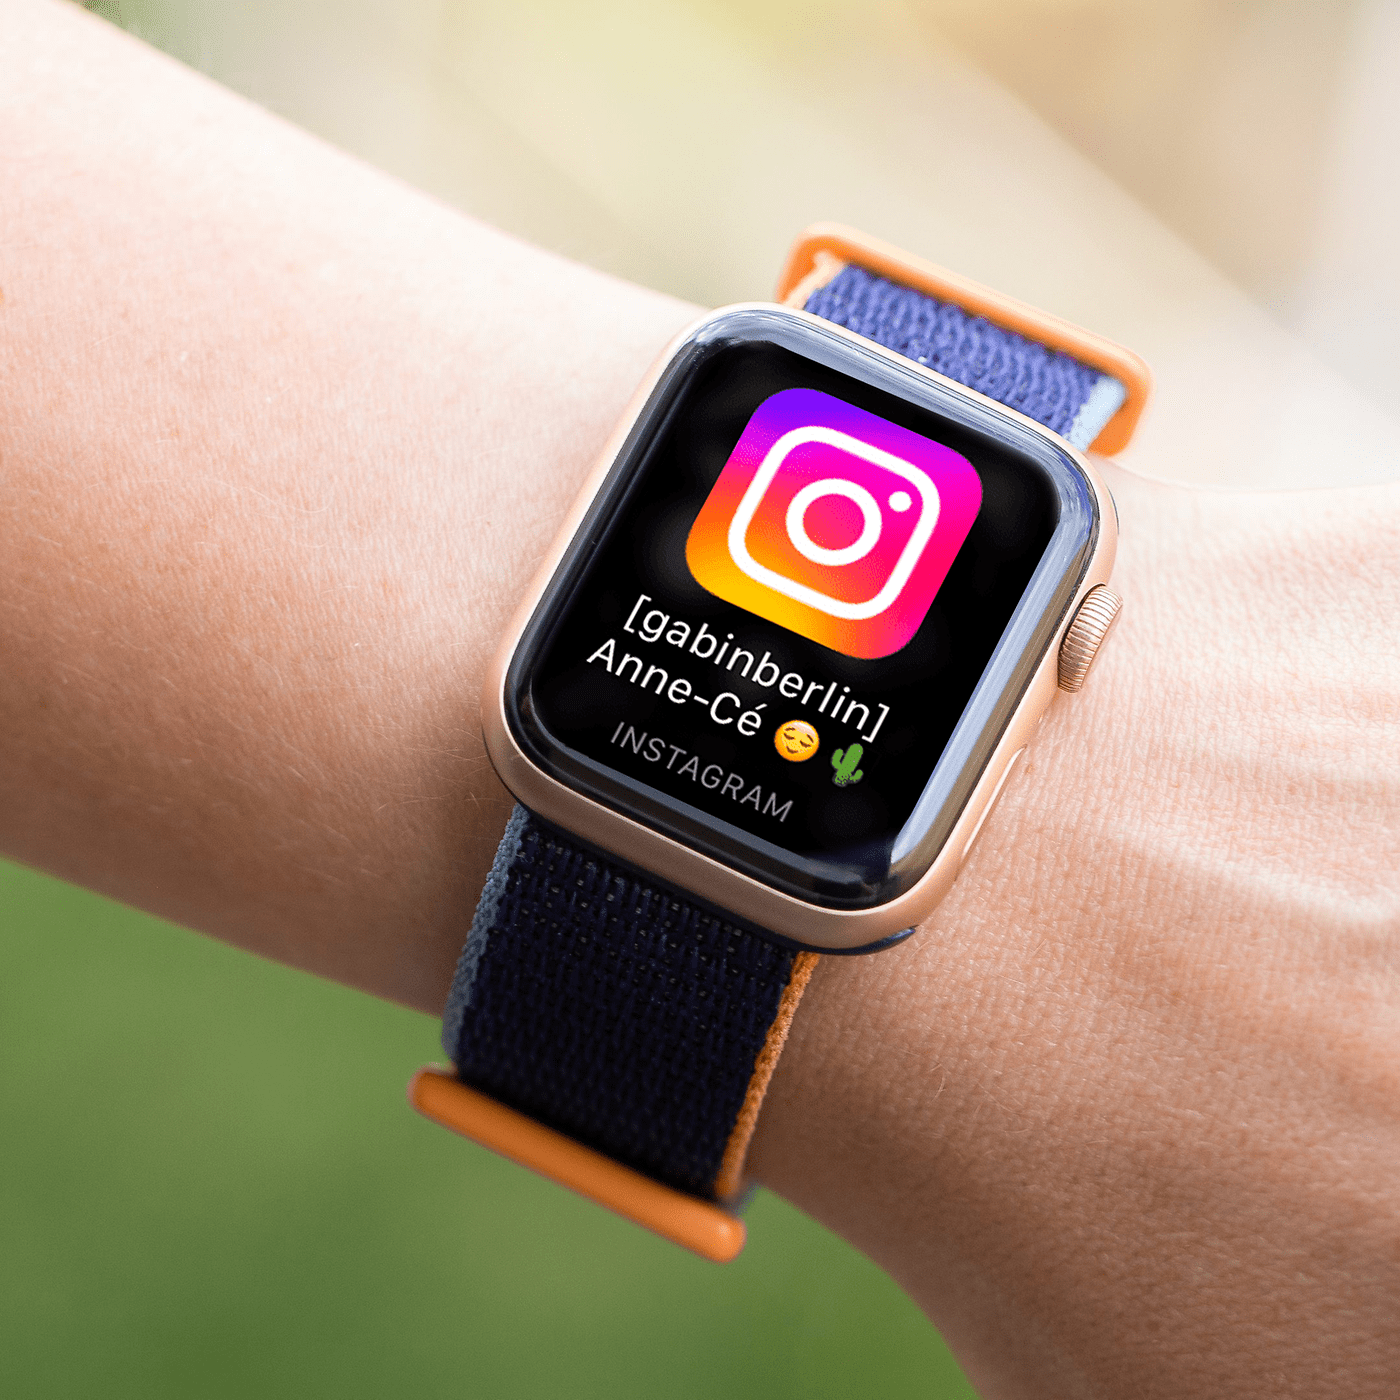 Với ứng dụng Instagram trên đồng hồ thông minh, chúng ta có thể dễ dàng lướt Instagram và xem thông báo mà không cần lấy điện thoại ra khỏi túi. Chức năng này cũng cho phép người dùng tạo nội dung dễ dàng hơn trên đồng hồ của họ. Nếu bạn muốn tận dụng tối đa khả năng của đồng hồ thông minh và Instagram, hãy thử sử dụng ứng dụng này ngay.